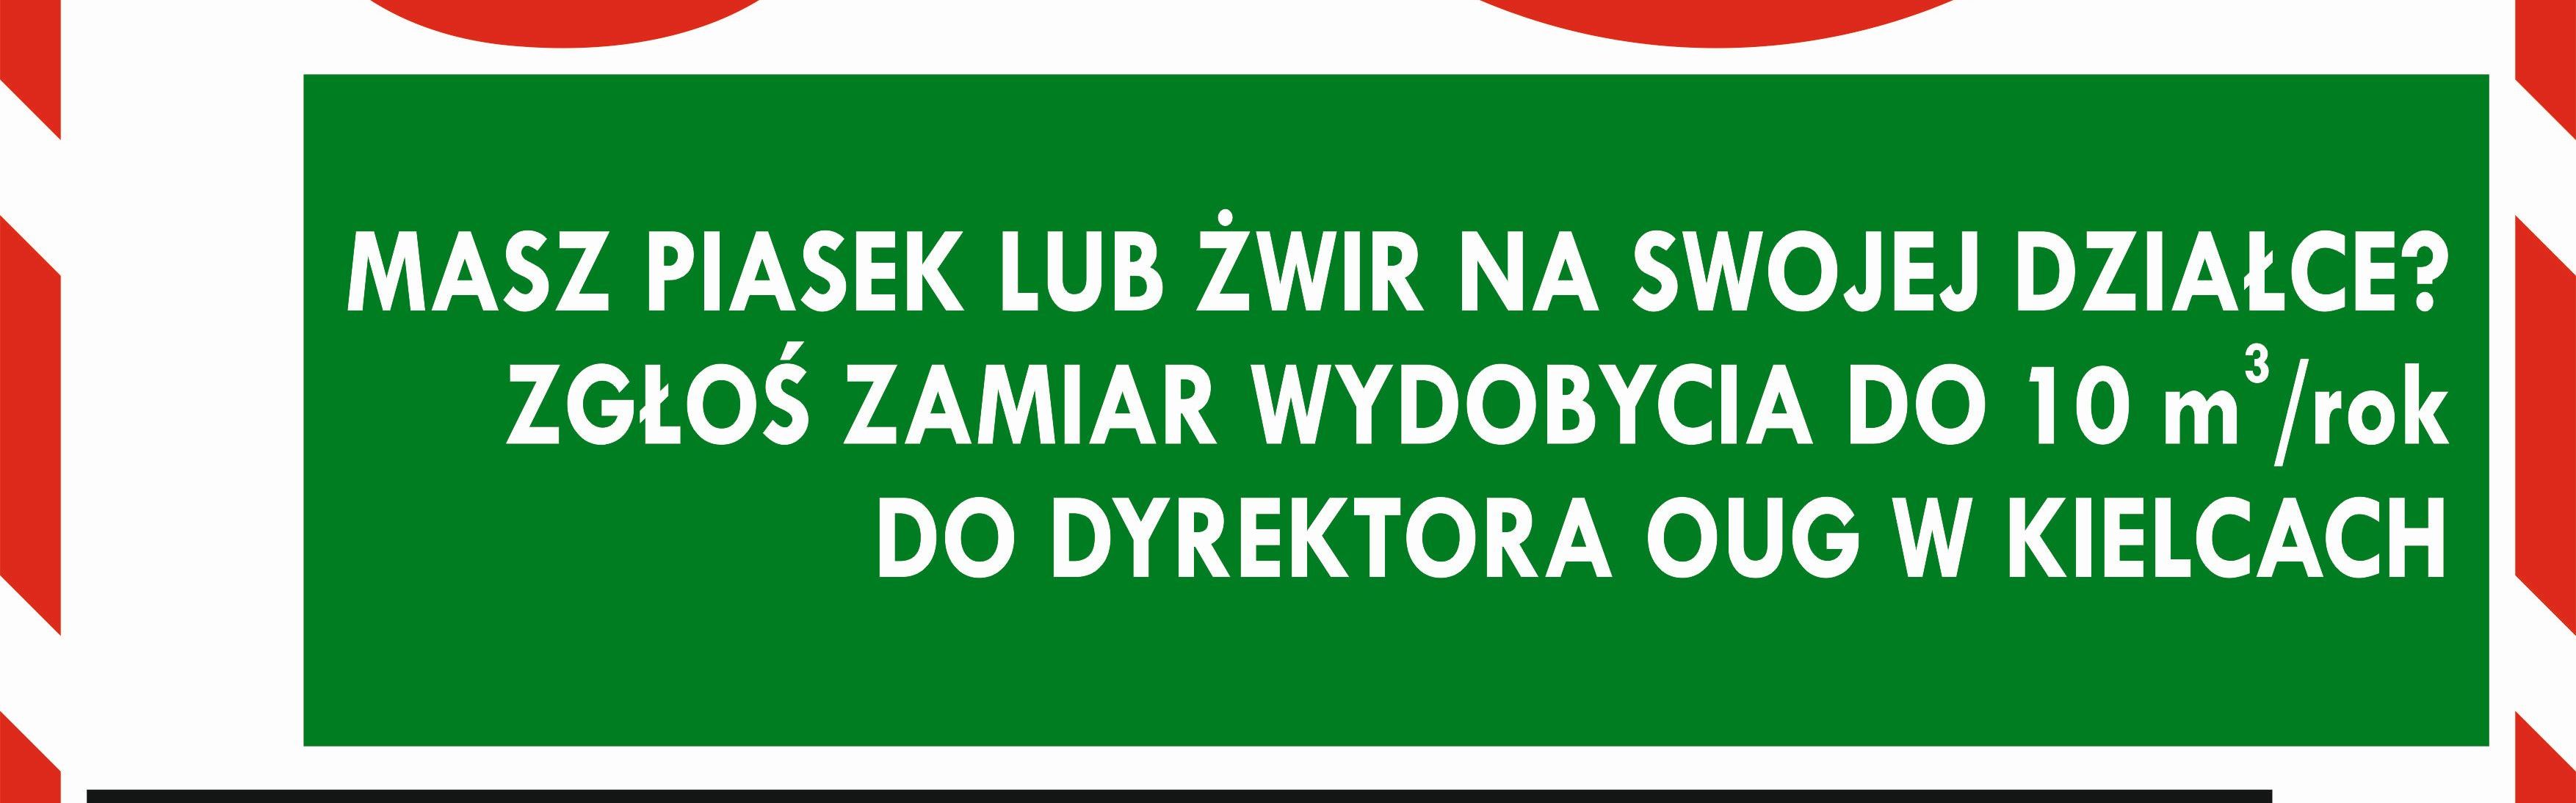 Informacja OUG w Kielcach w sprawie wydobycia na własne potrzeby piasku i żwiru